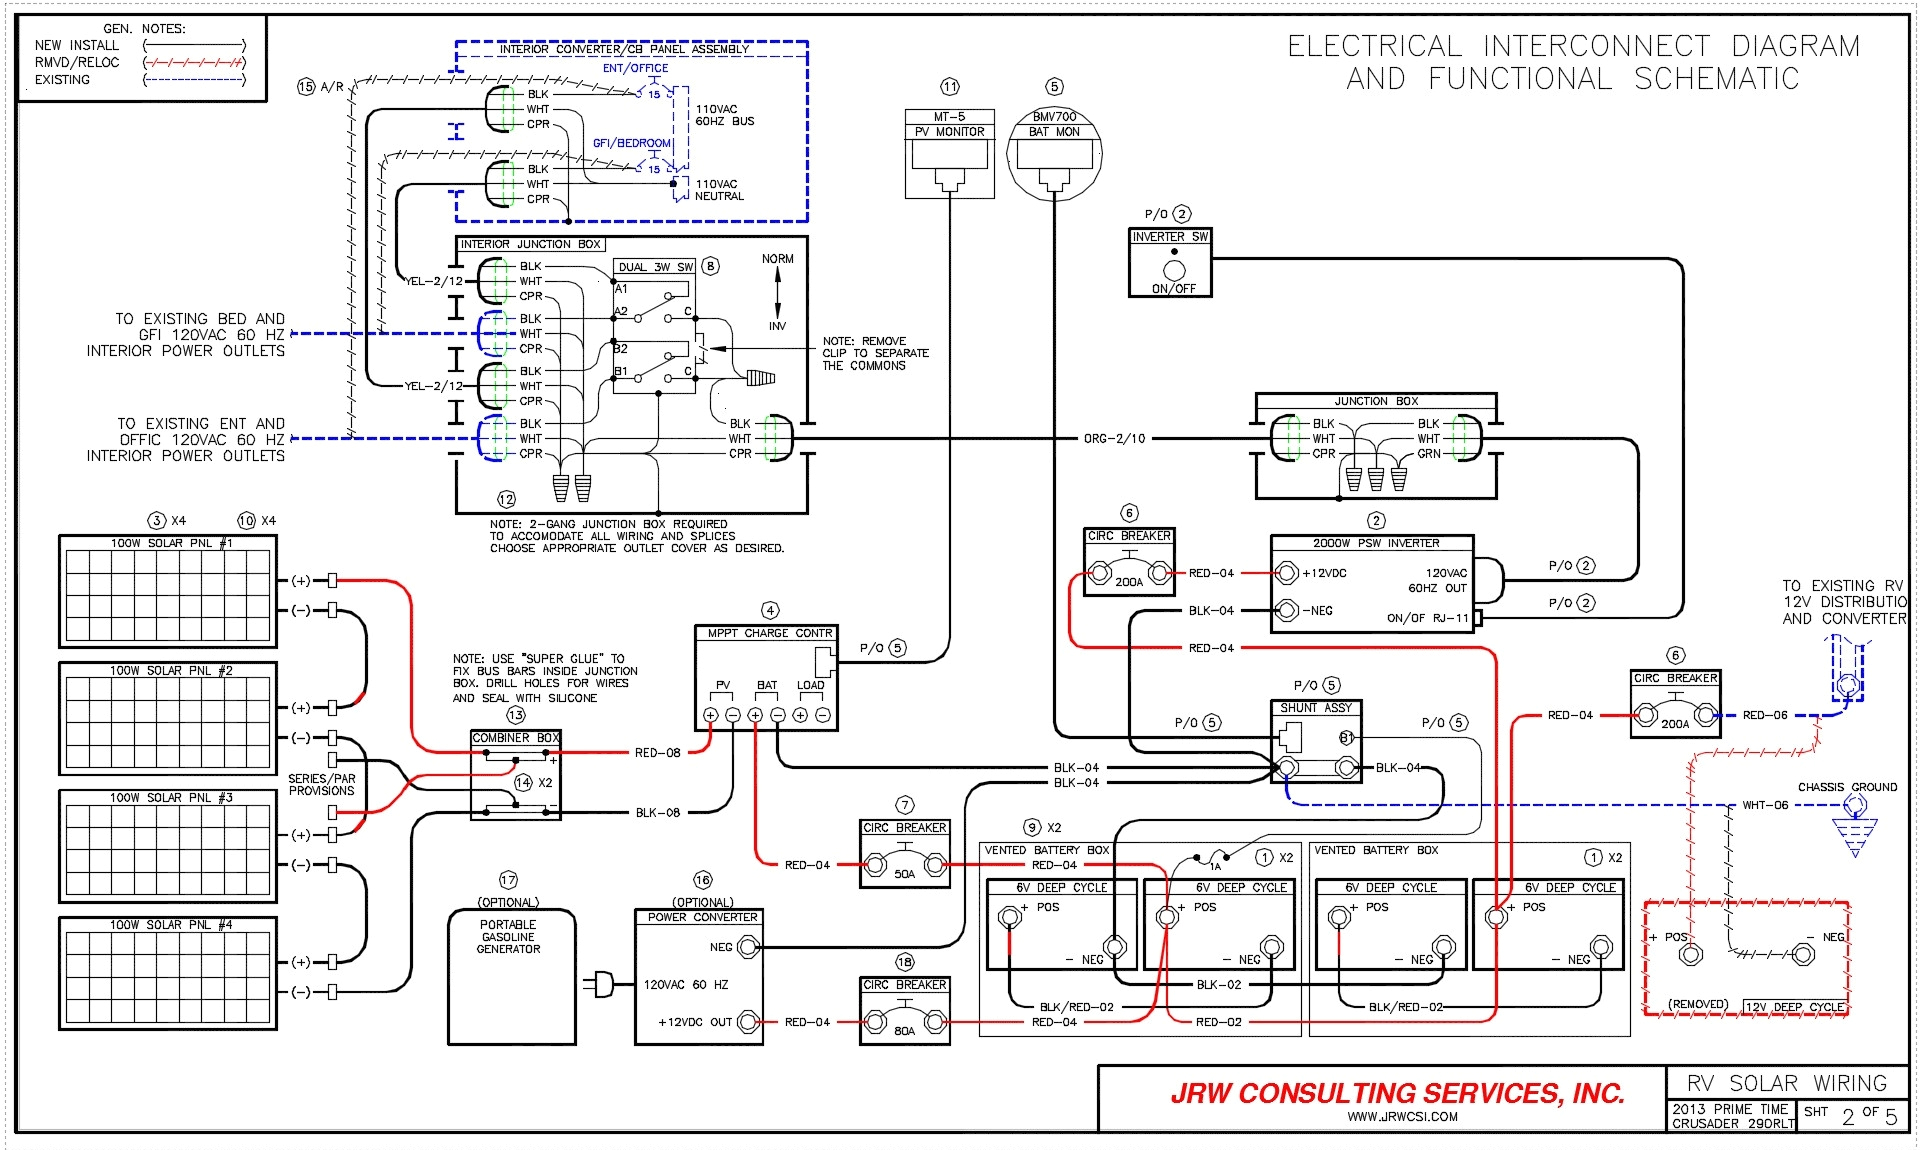 rv power converter wiring diagram wiring diagrams rv power converter schematic